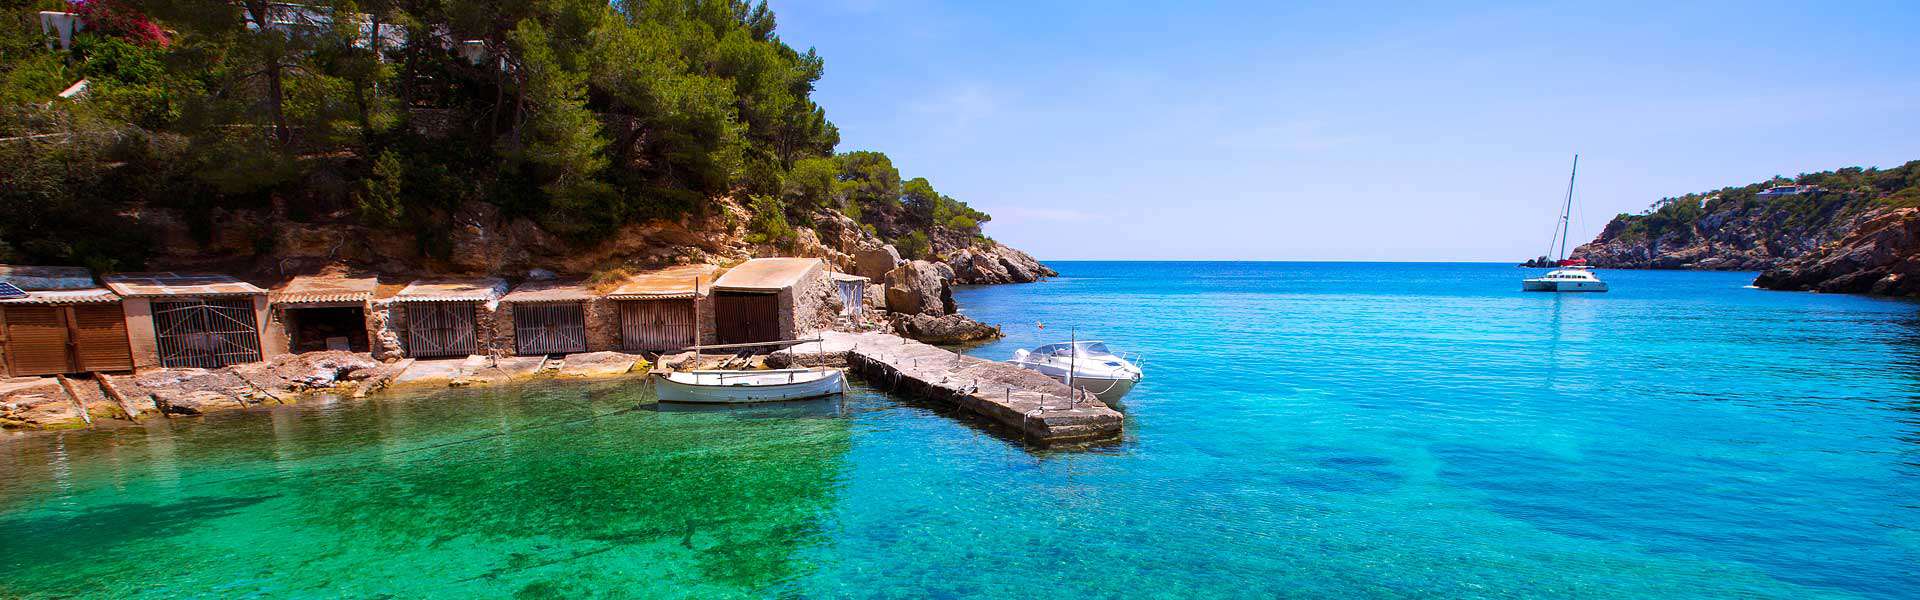 Der Geheimtipp: Santa Eulalia del Rio - Traveltipps auf der Insel Ibiza